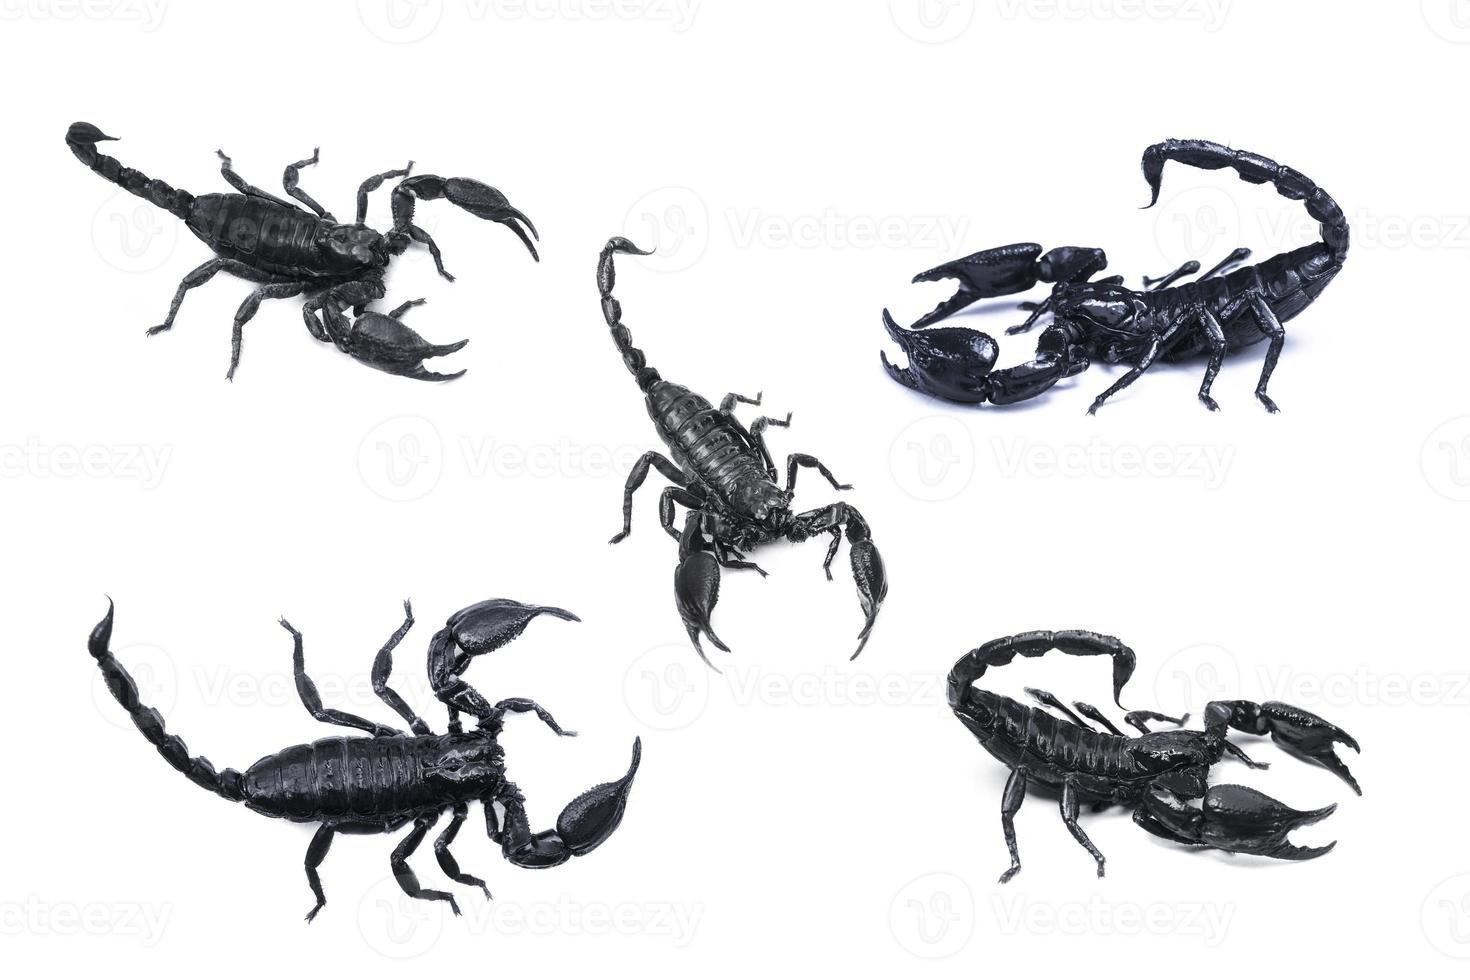 empereur scorpion, pandinus imperator isolé sur fond blanc. insecte.piqûre venimeuse au bout de sa queue articulée photo